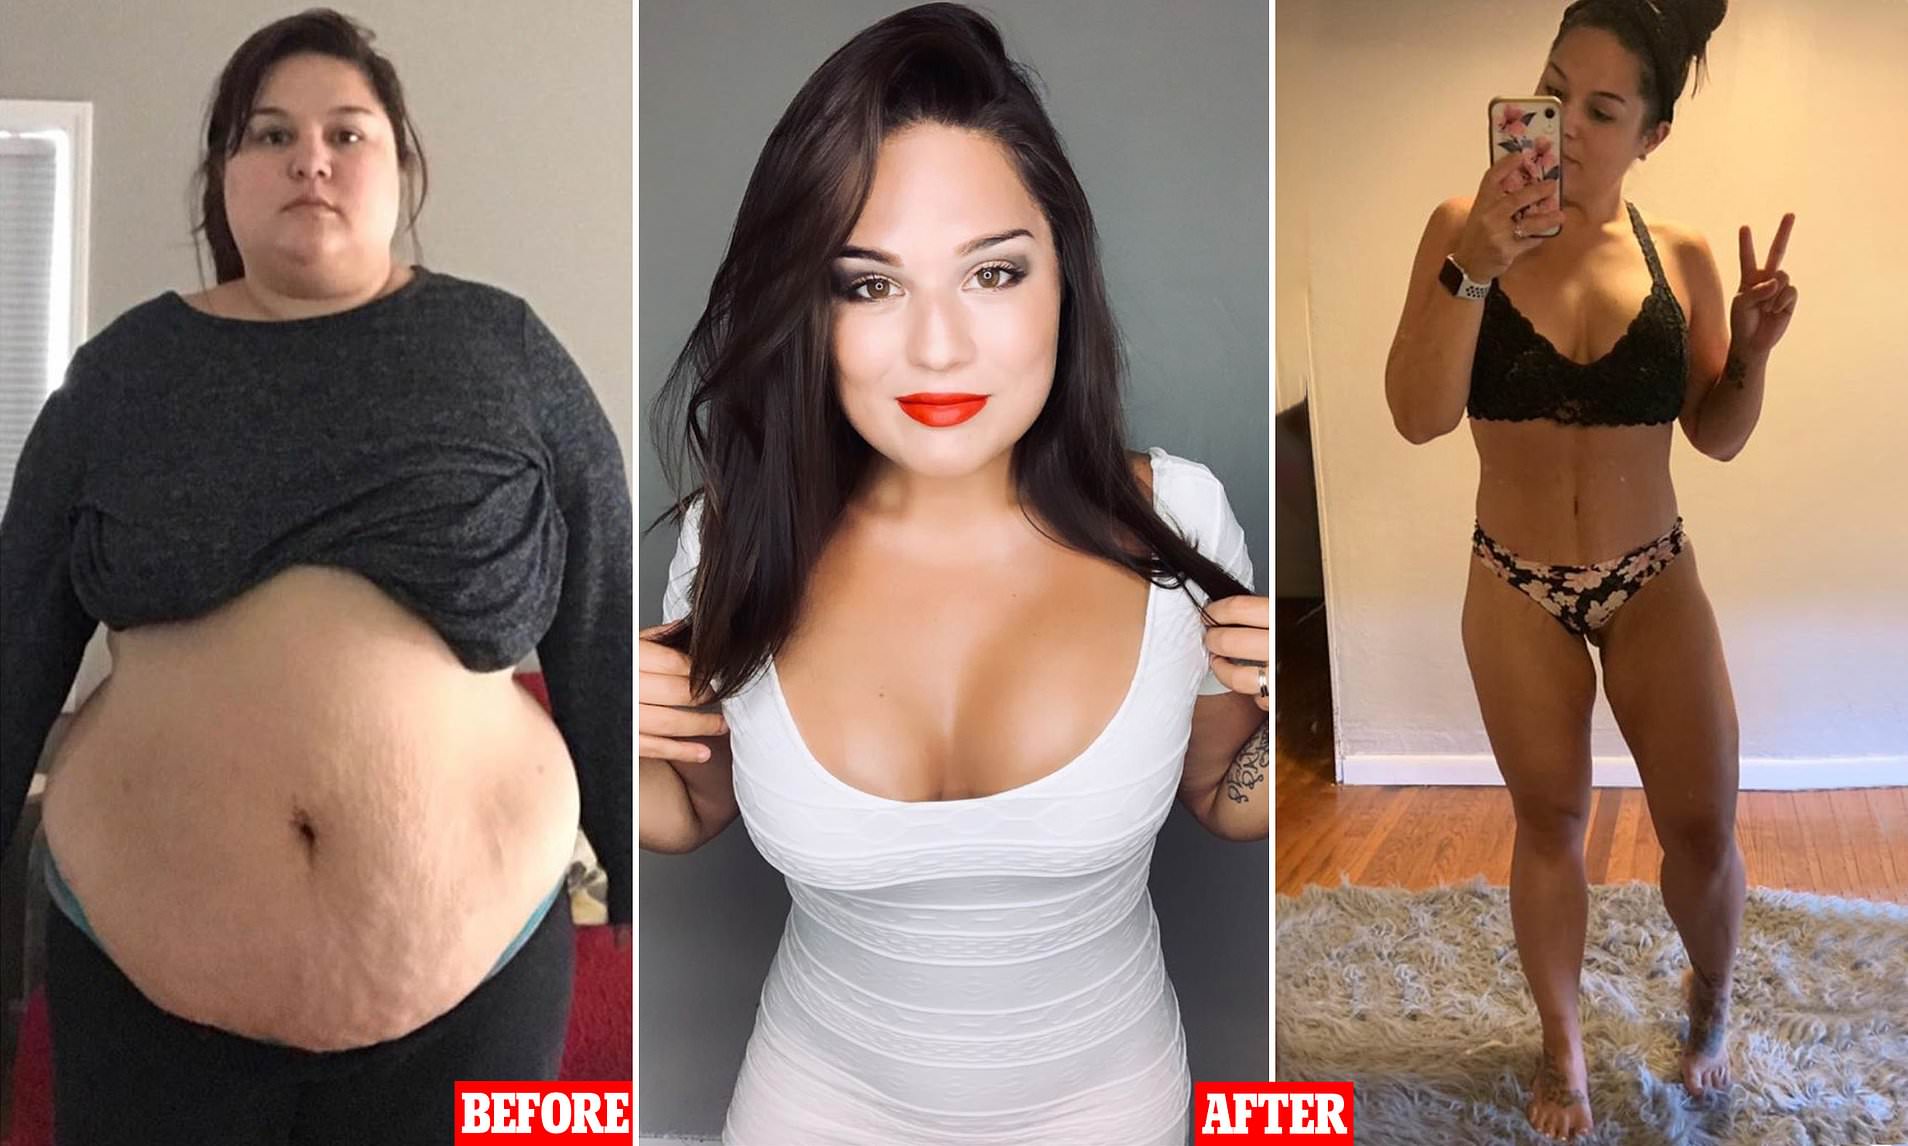 Transformation physique : Elle perd 57 kilos, ainsi que la plupart de ses amis